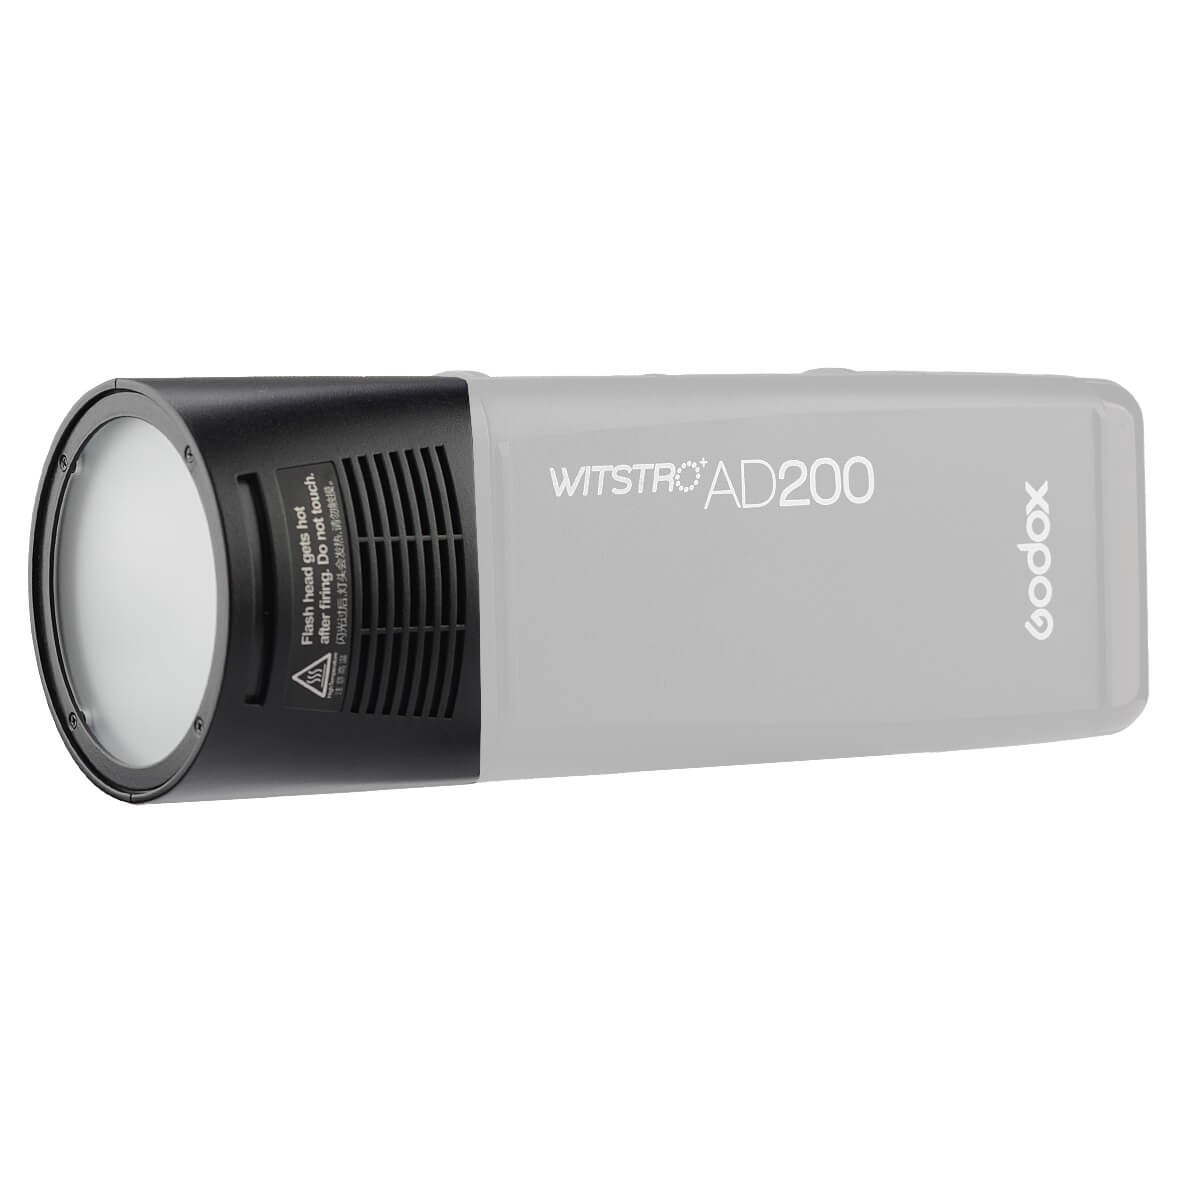 Godox H200R Ring Flash Kopf mit 200Ws Starke Power und natürliche Lichteffekte für Godox AD200 Pocket Flash Licht und Portable die gleichmäßige und weiche Lichteffekte für die Aufnahme bietet